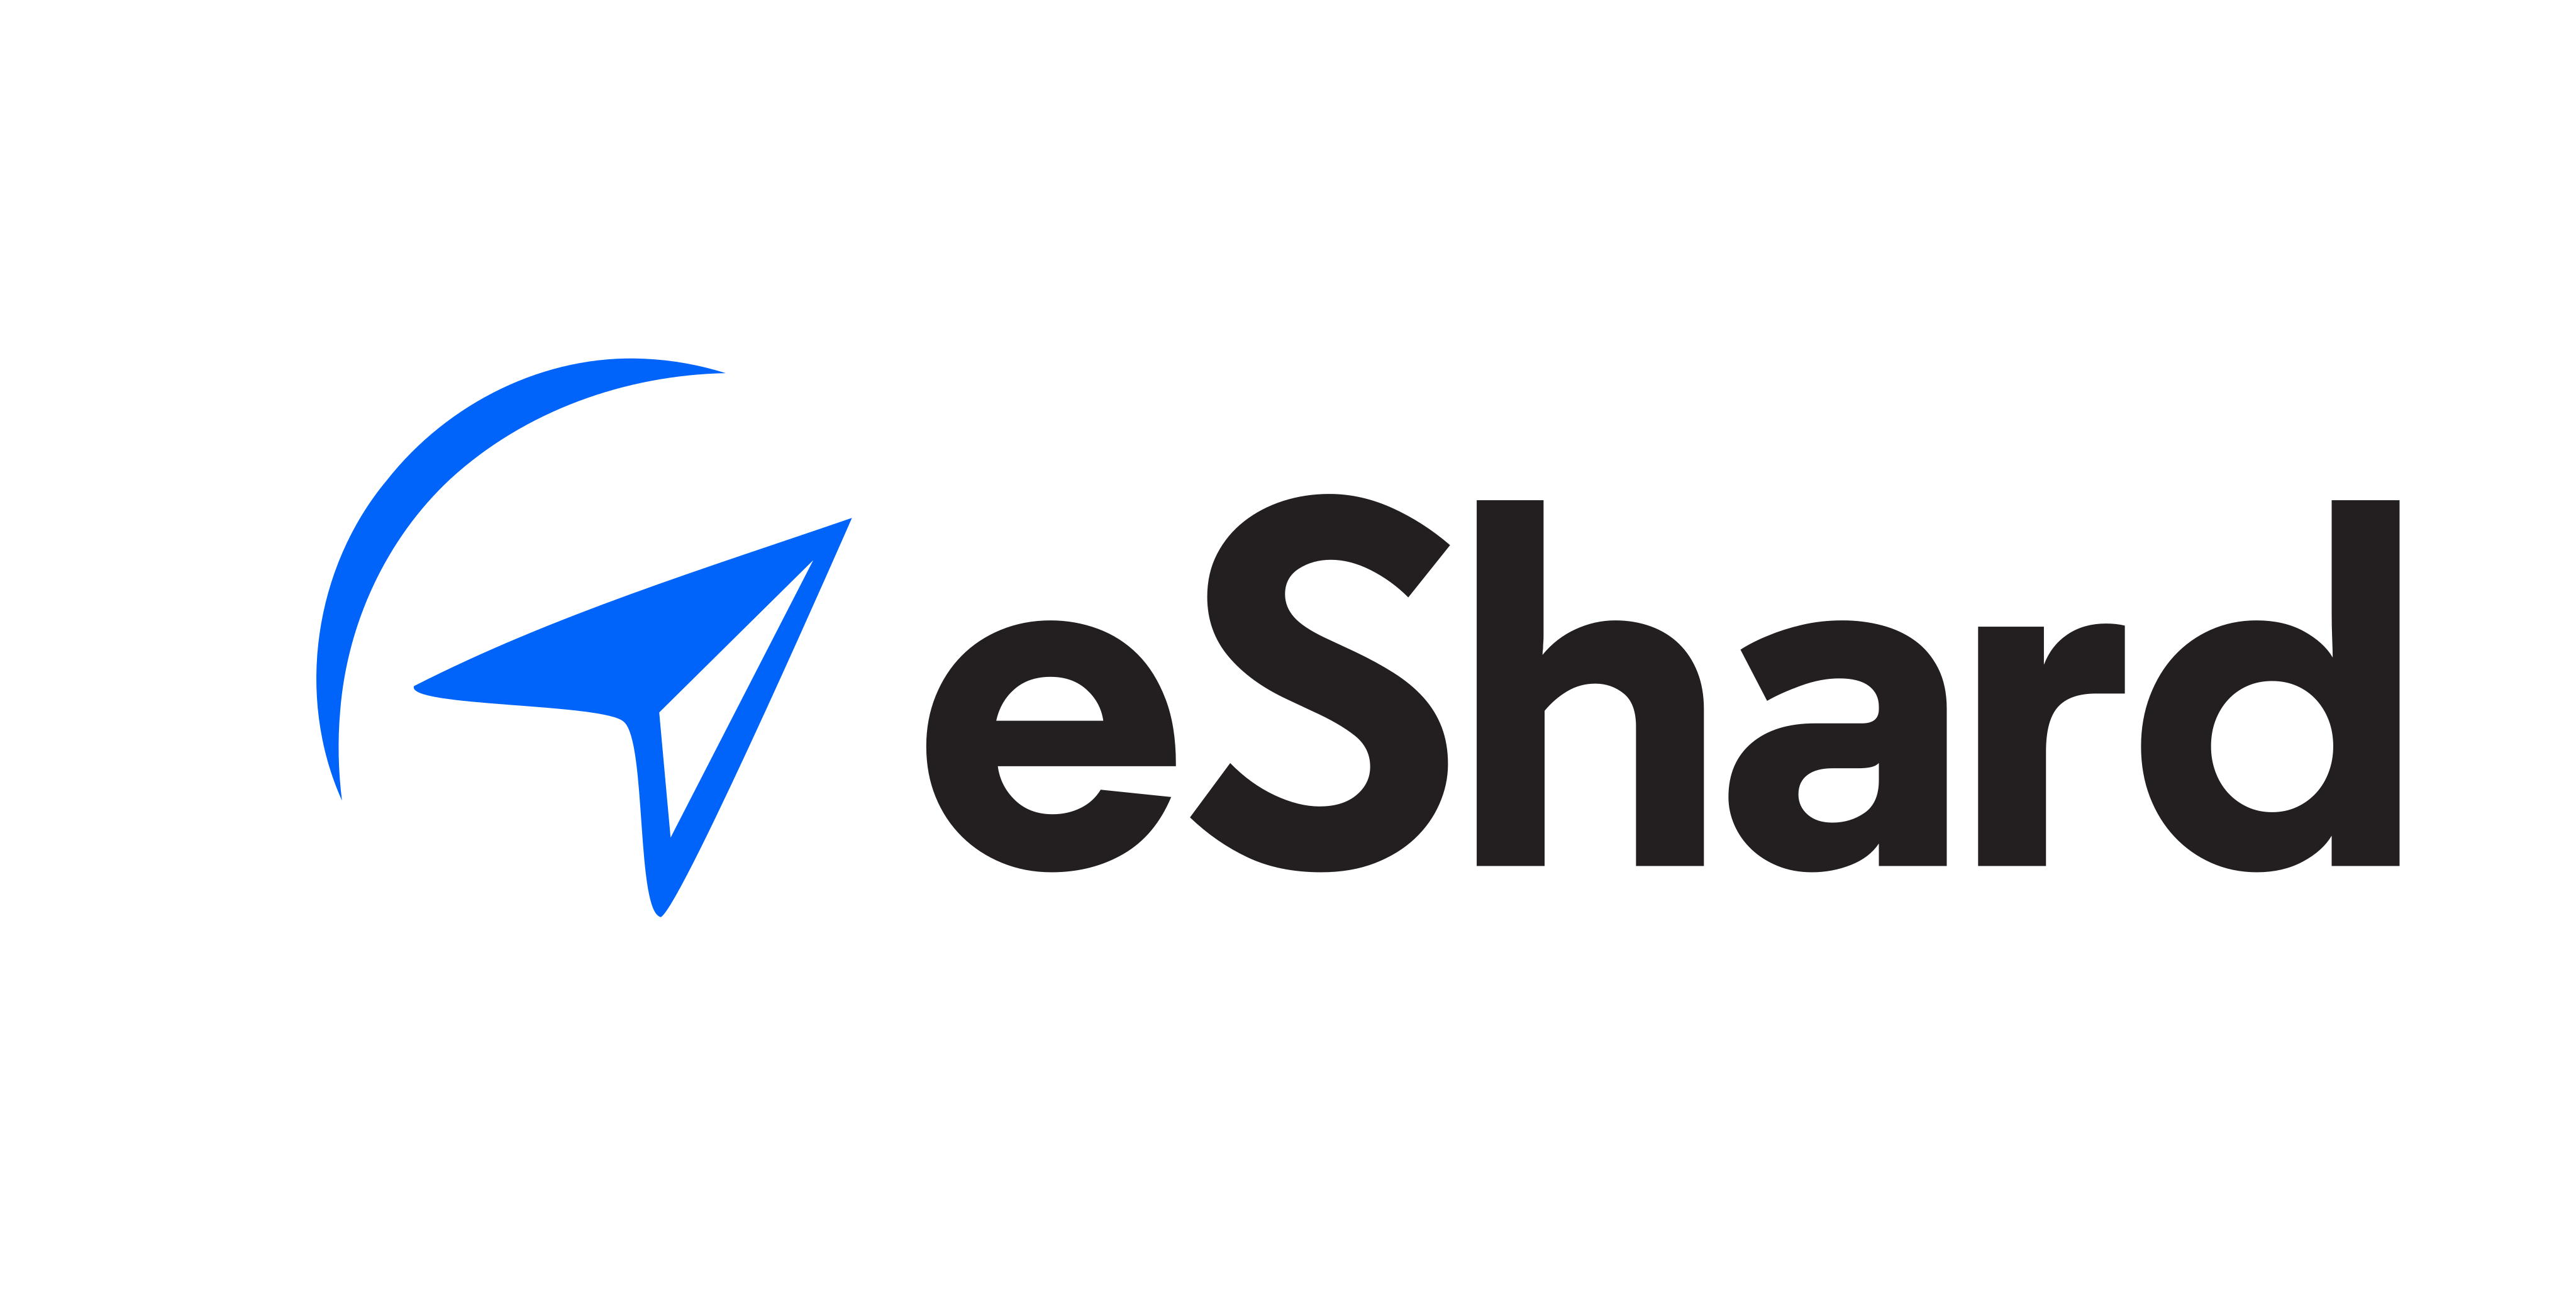 eShard logo